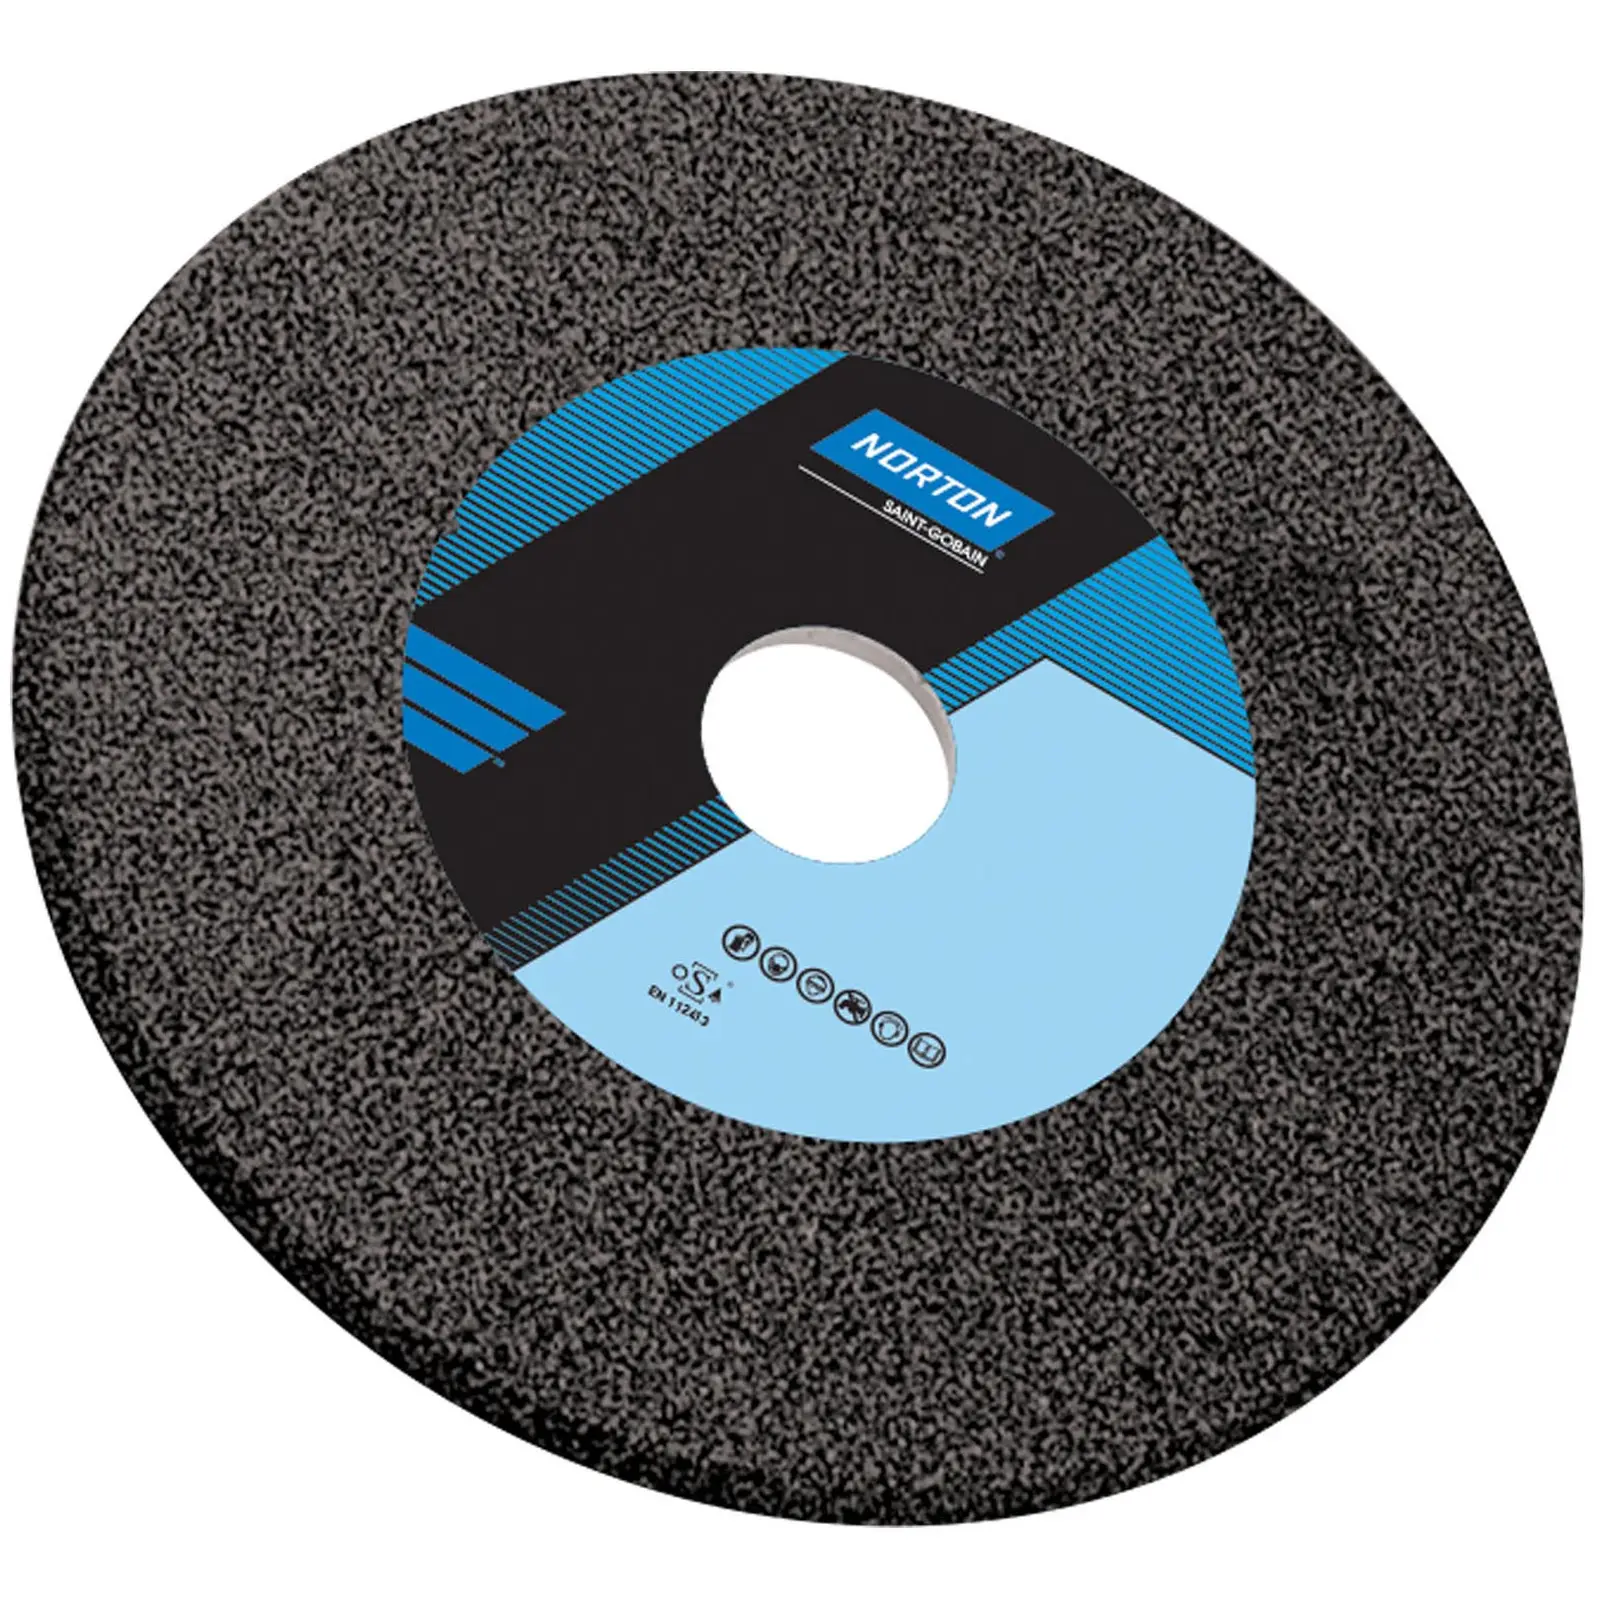 Disco para amoladora - Ø 200 mm - grano: 46 - grado de dureza: K - carburo de silicio (negro) - 5 unidades